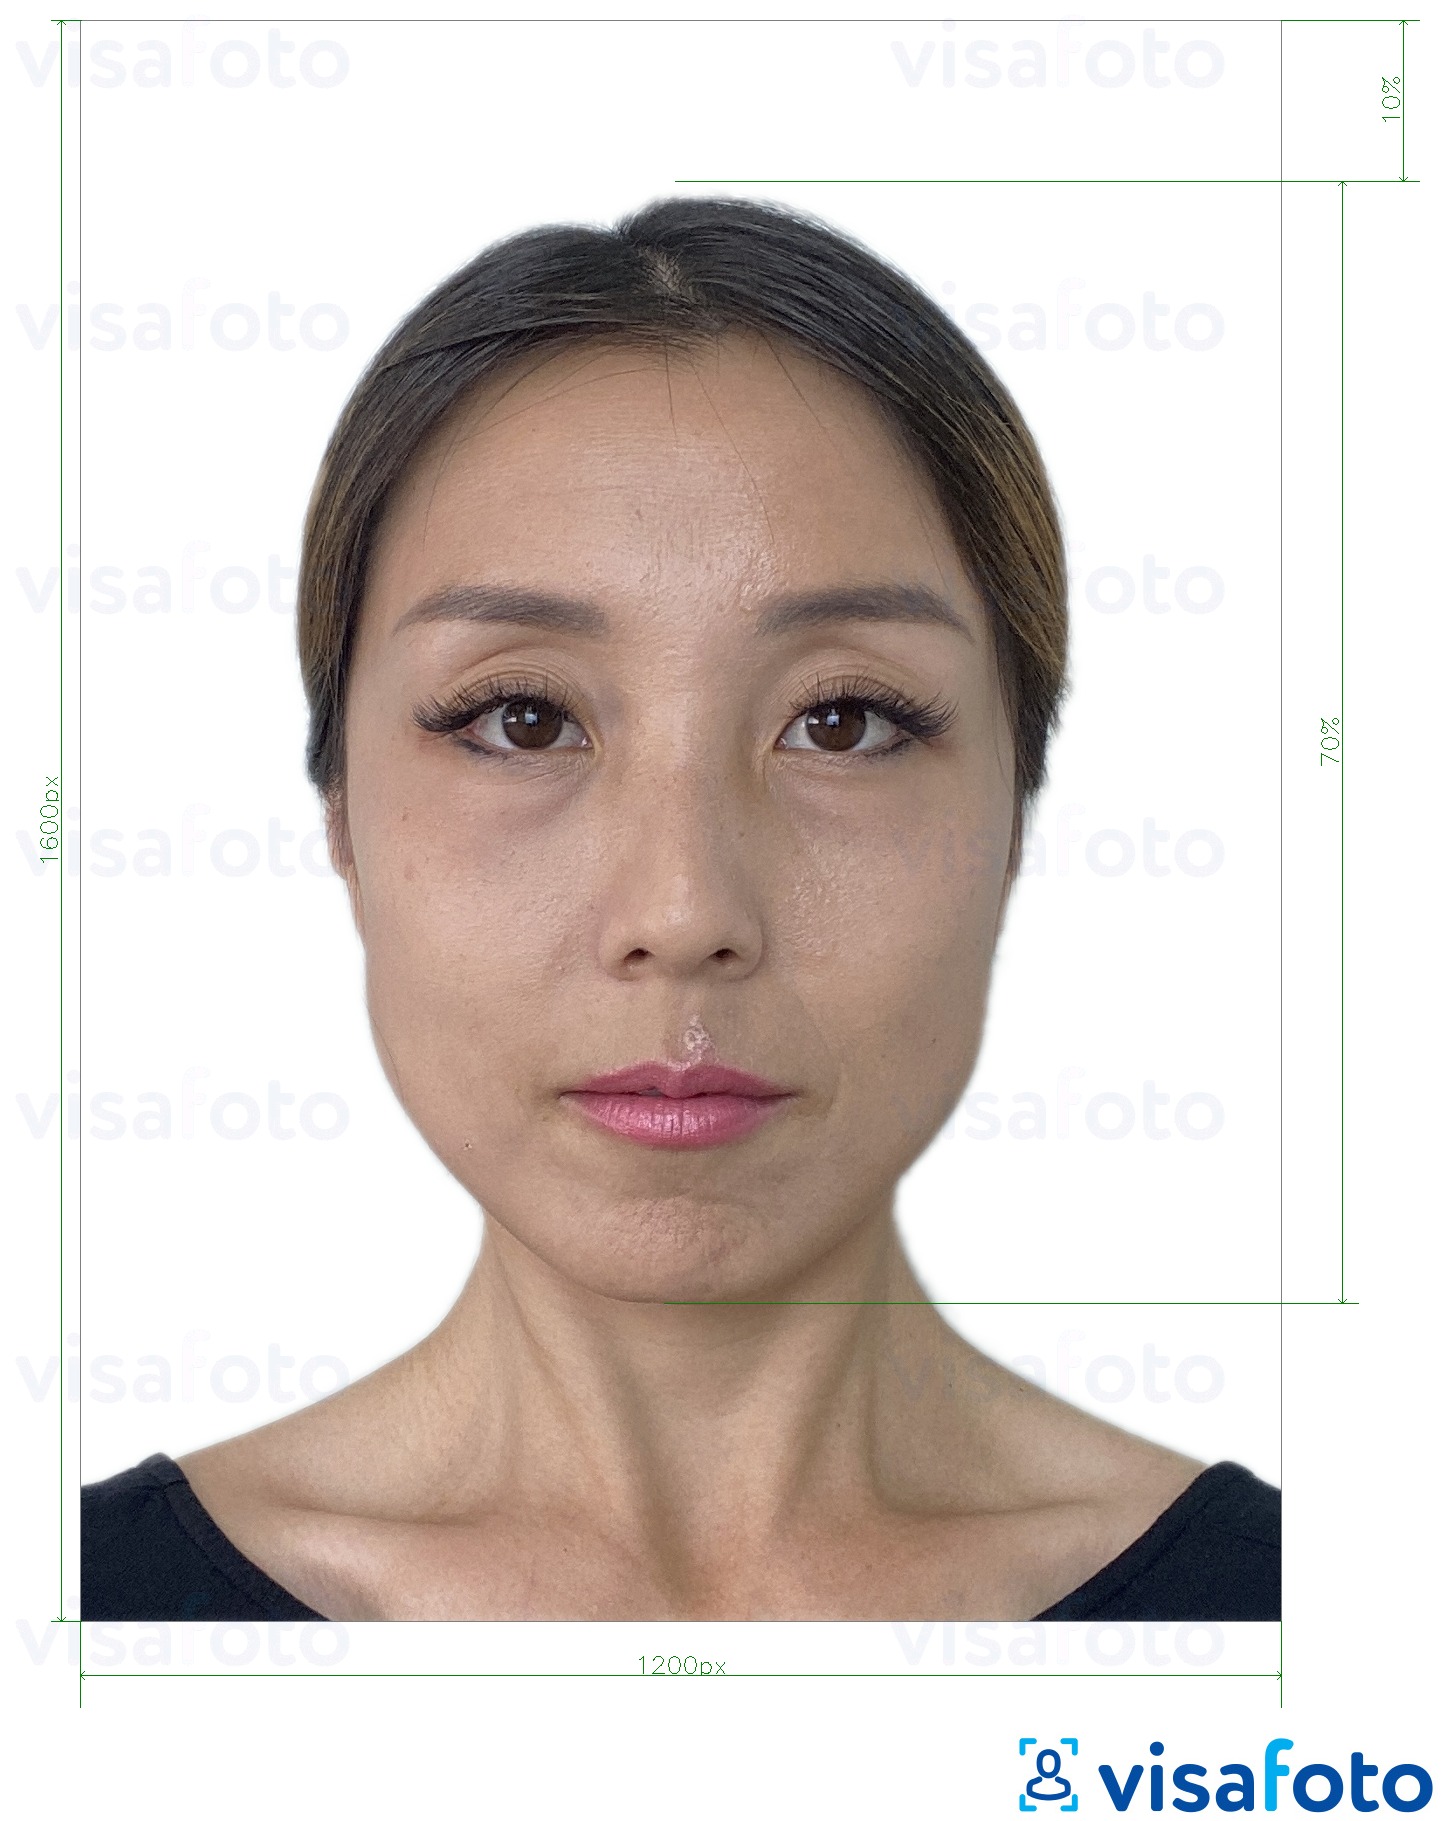 Voorbeeld van foto voor Hong Kong online e-paspoort 1200x1600 pixels met exacte maatspecificatie